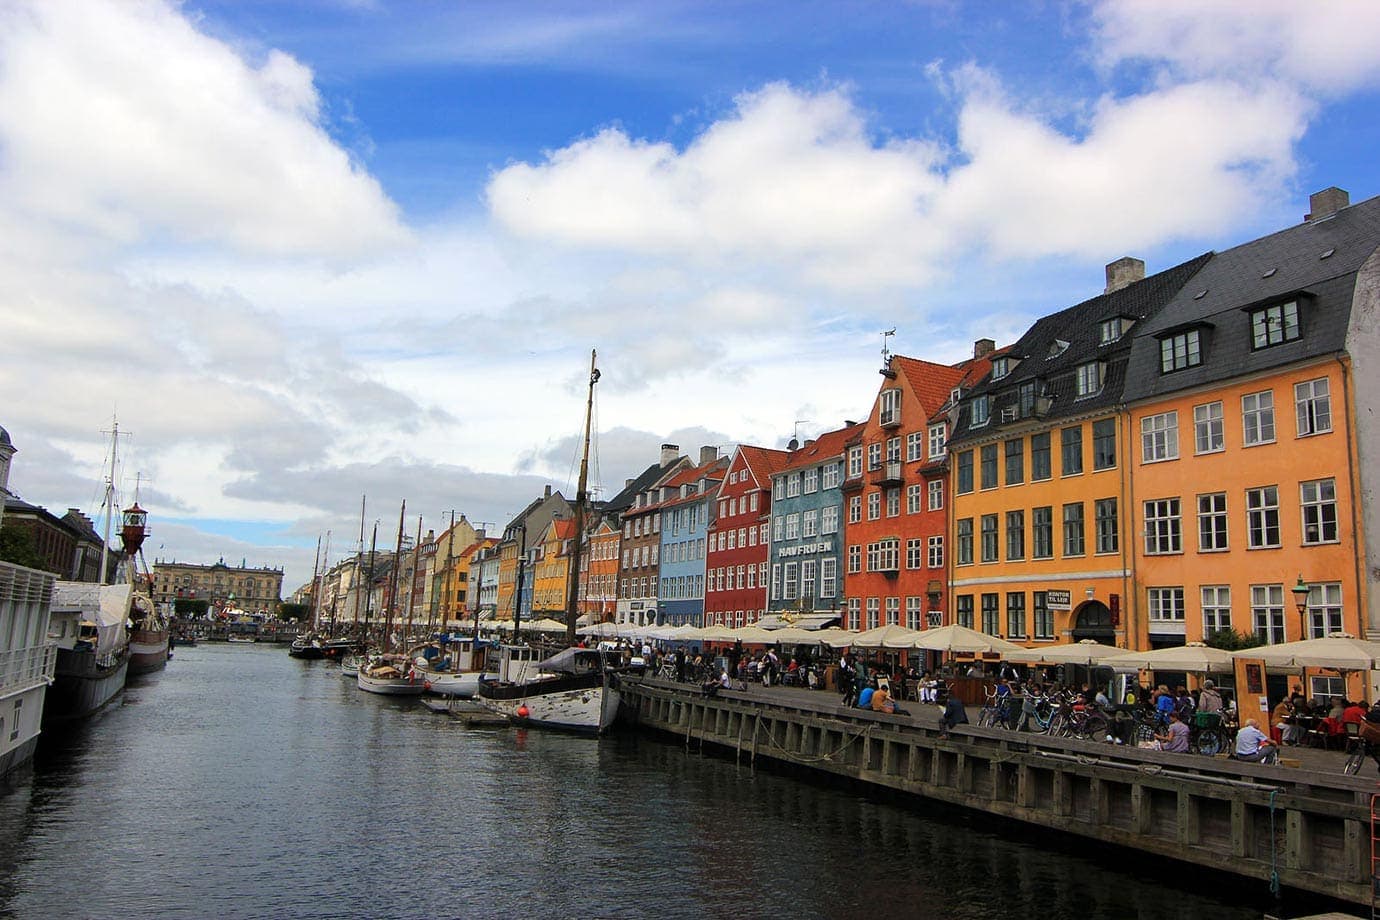 16张照片会让你想去哥本哈根